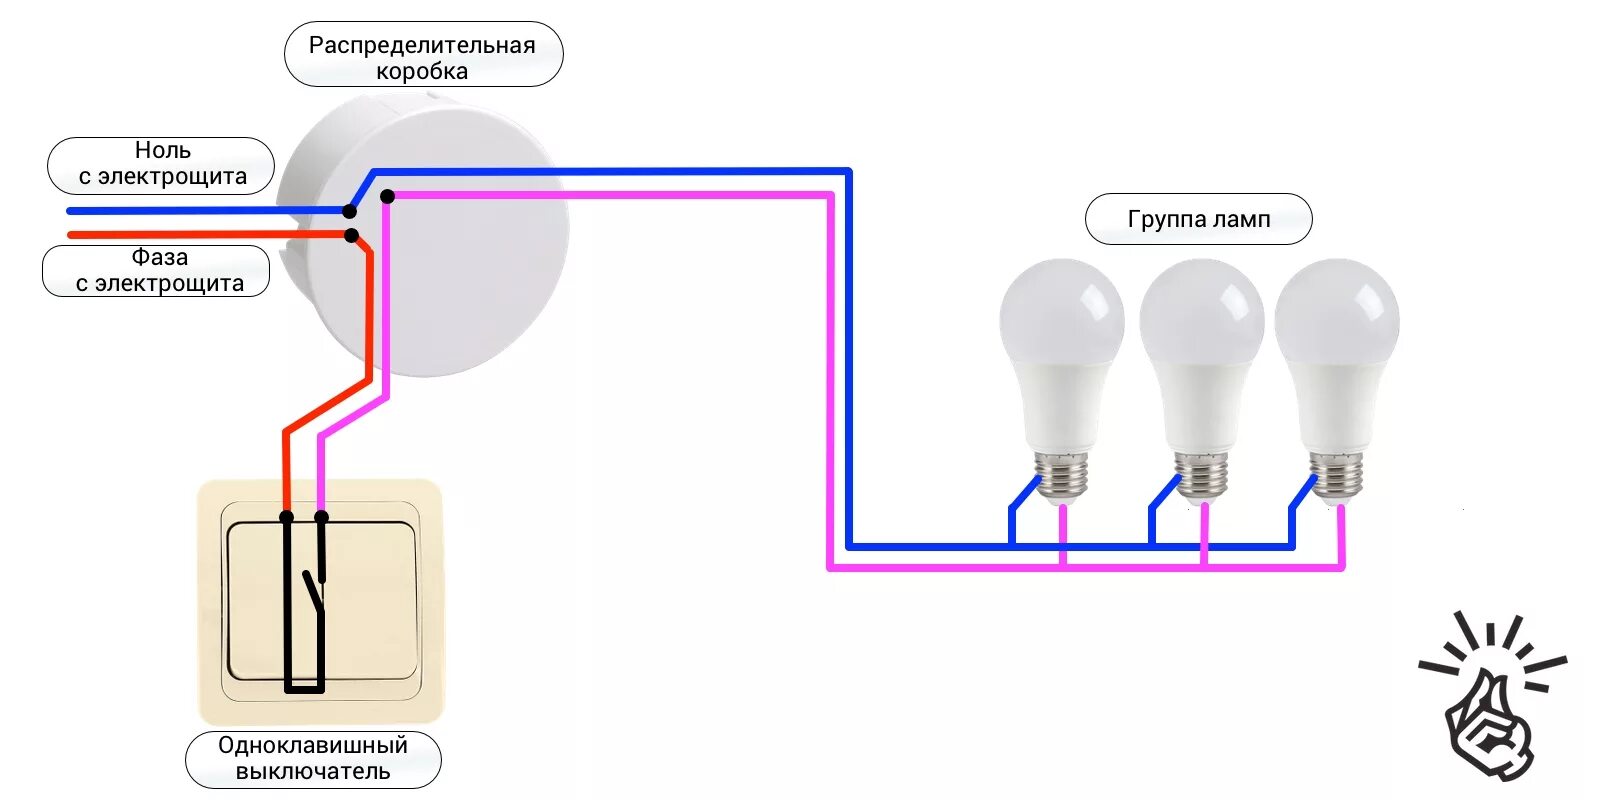 Как подключить выключатель дома. Схема подключения одноклавишного выключателя на две лампочки. Схема подключения одноклавишного выключателя на две лампы. Схема подключения одноклавишного выключателя к лампе. Схема подключения выключателя одноклавишного к 2 лампочкам.